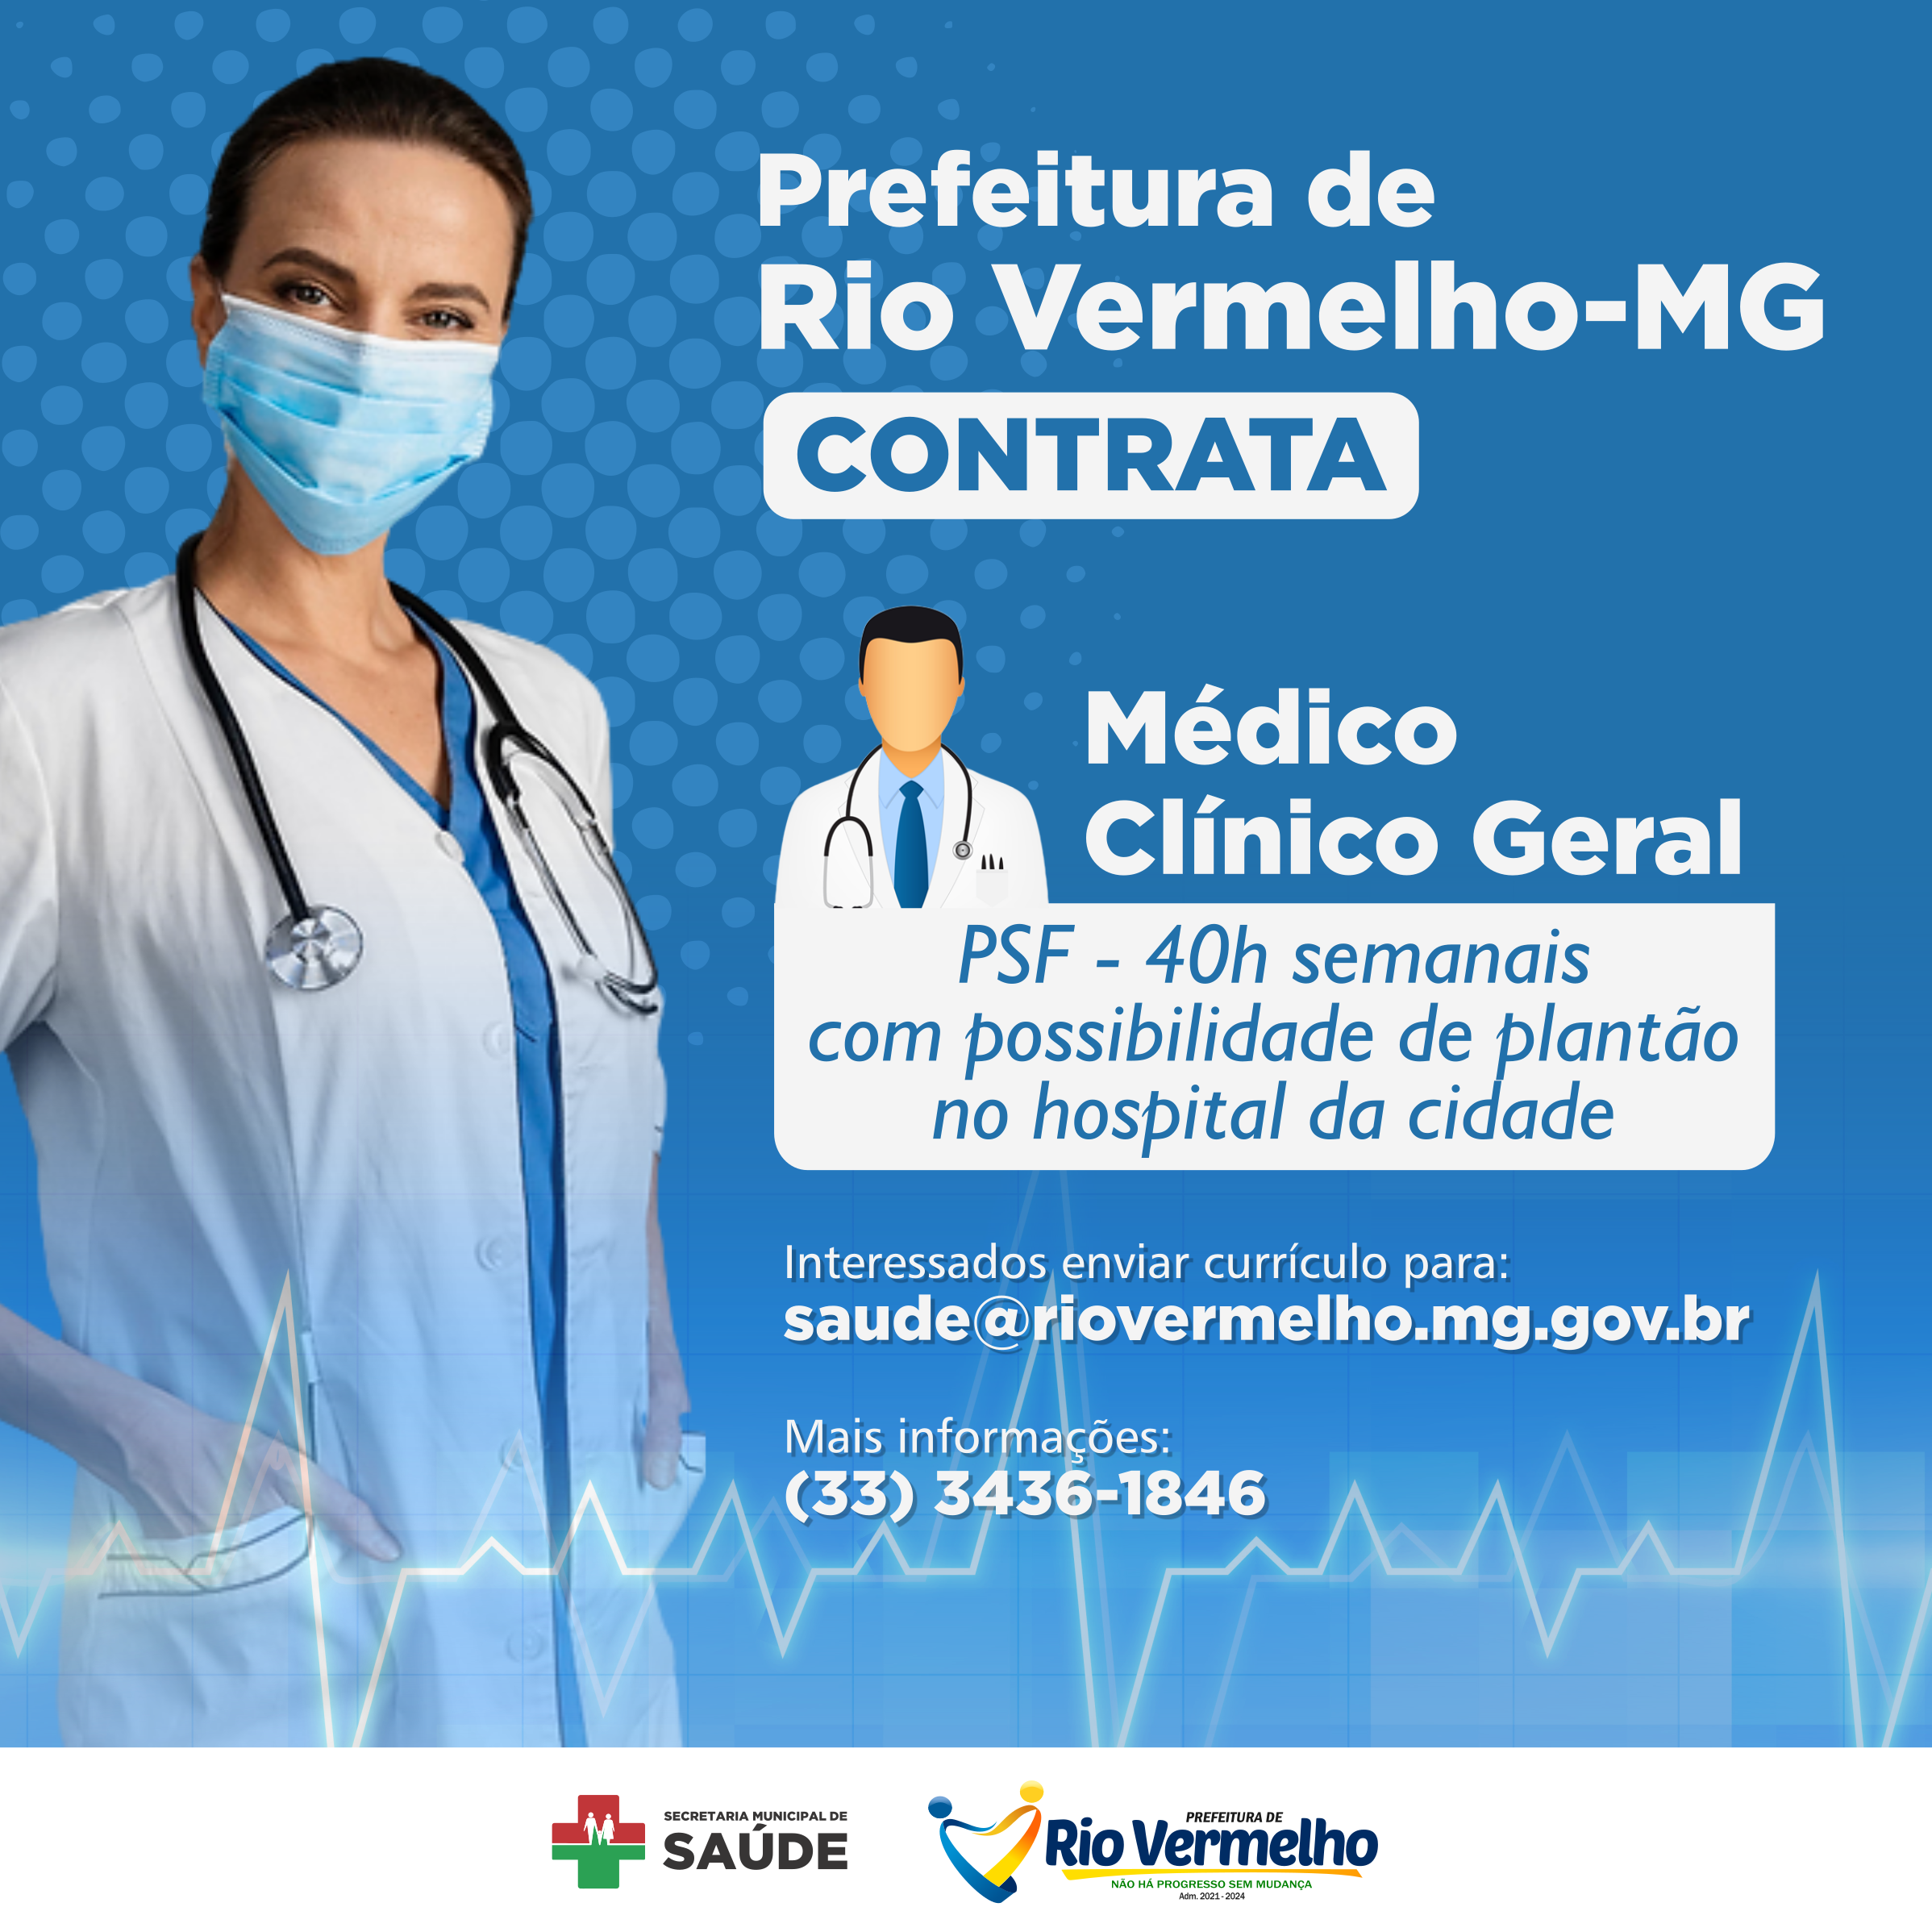 You are currently viewing PREFEITURA DE RIO VERMELHO CONTRATA MÉDICO CLÍNICO GERAL